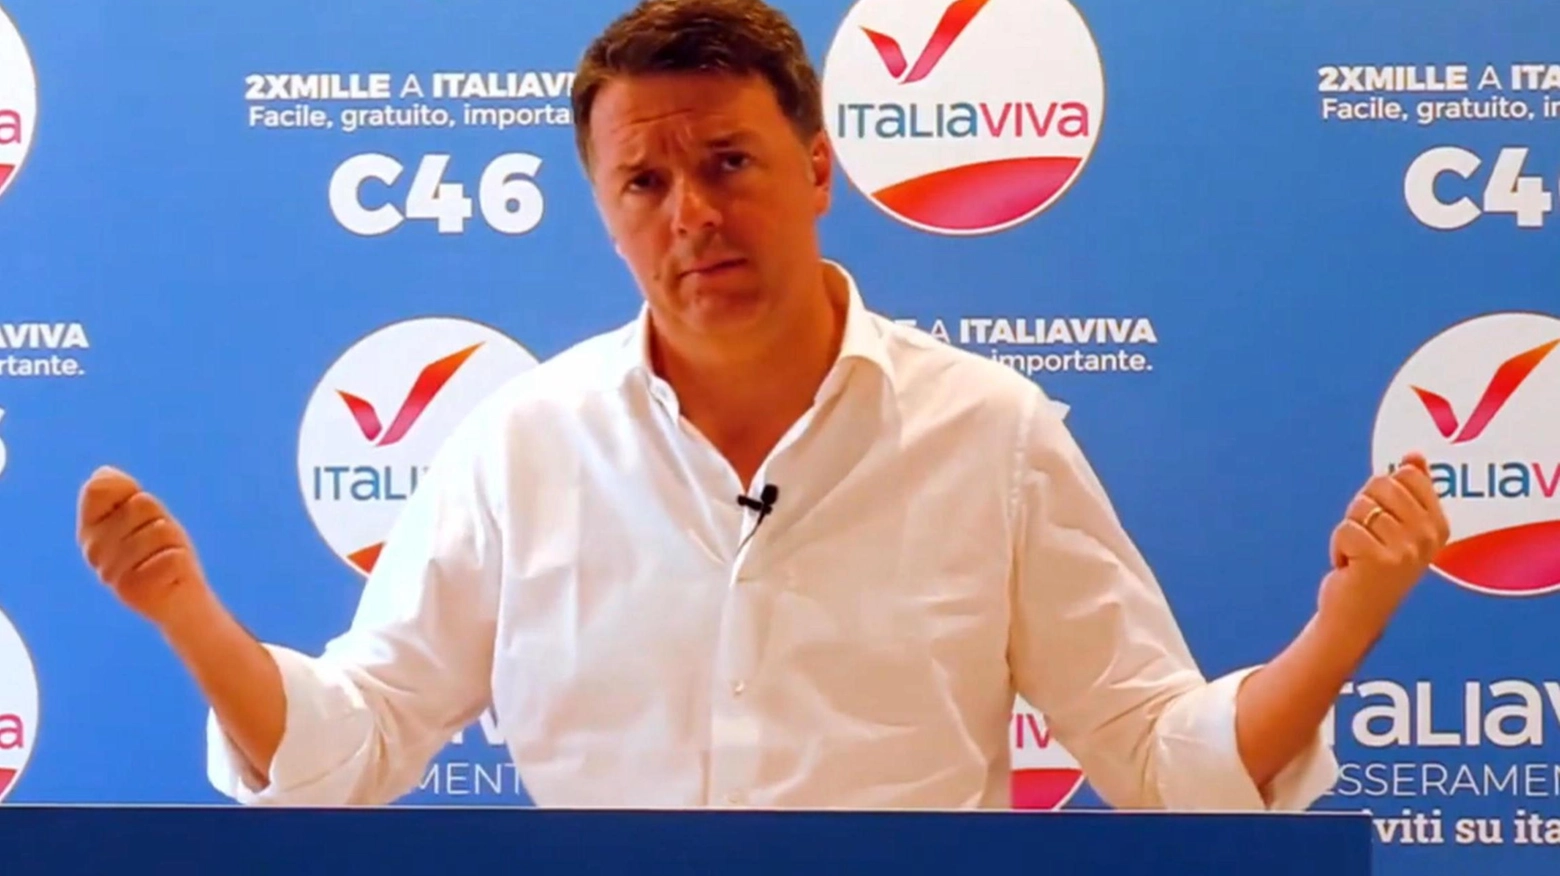 Il leader di Italia Viva, Matteo Renzi, 46 anni